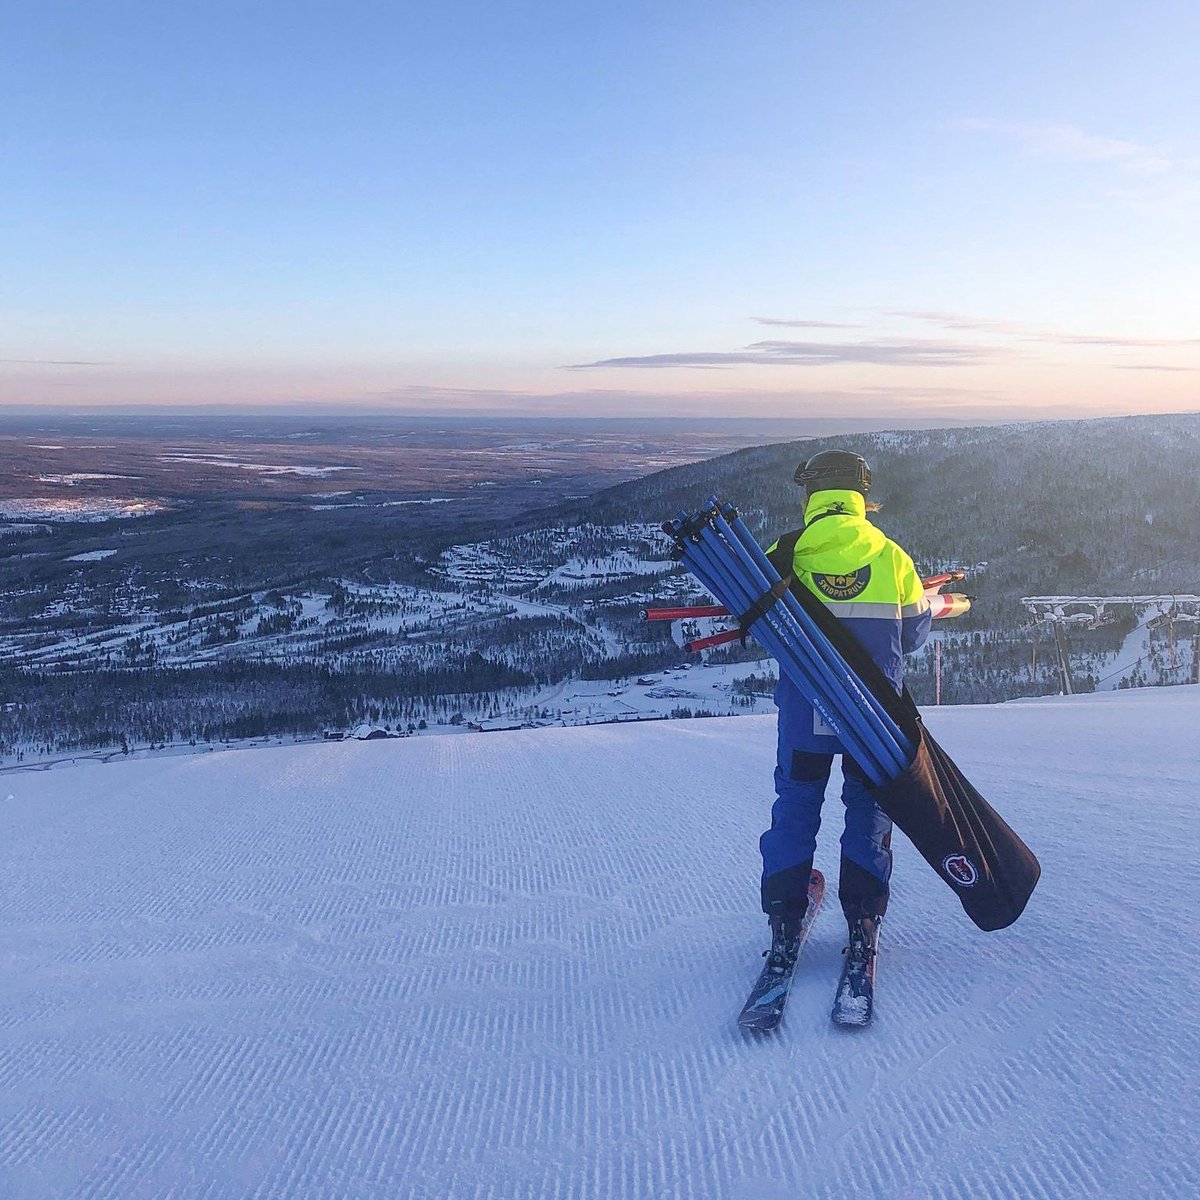 Kanske har vår skidpatrull Sveriges allra vackraste arbetsplats, med milslånga vyer ut över en vinterklädd fjällvärld. https://t.co/cHYEZKPgWX